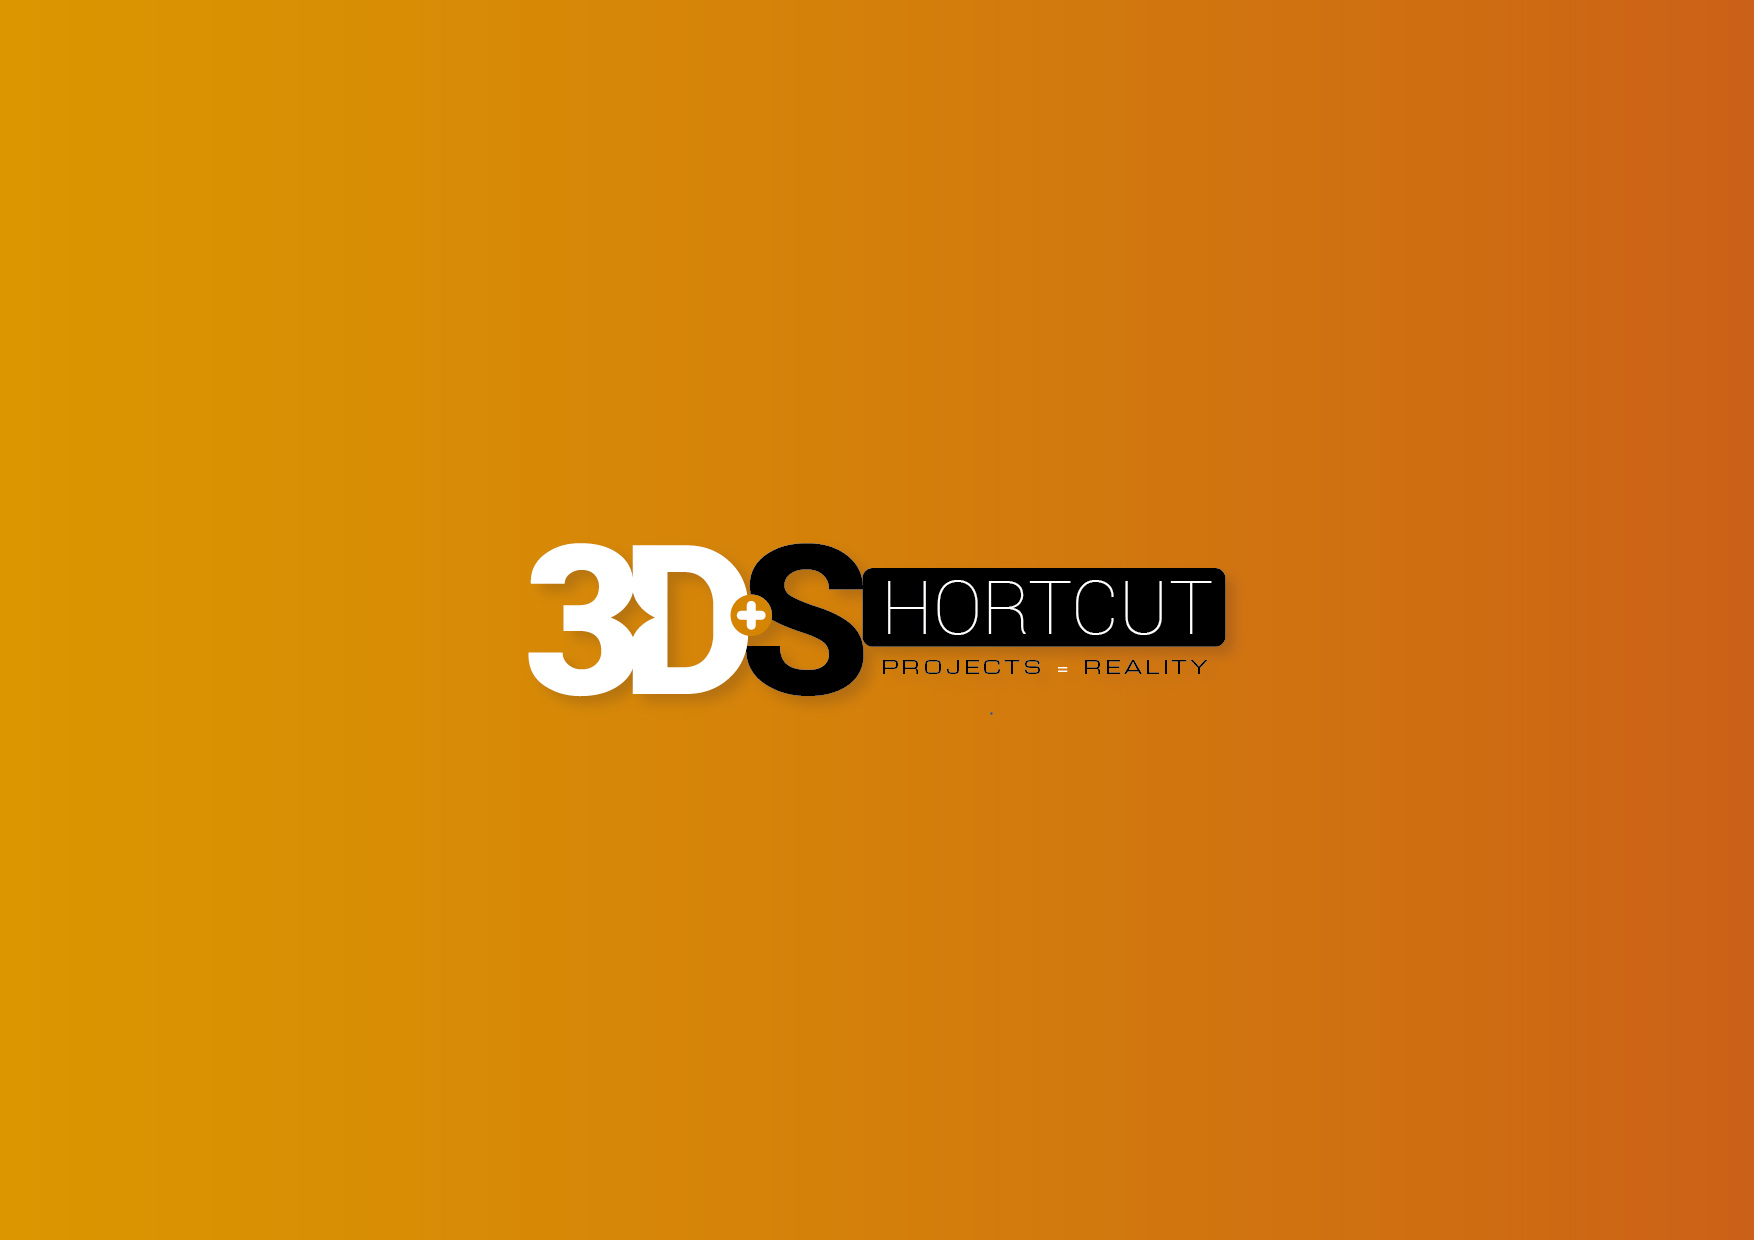 3D Shortcut